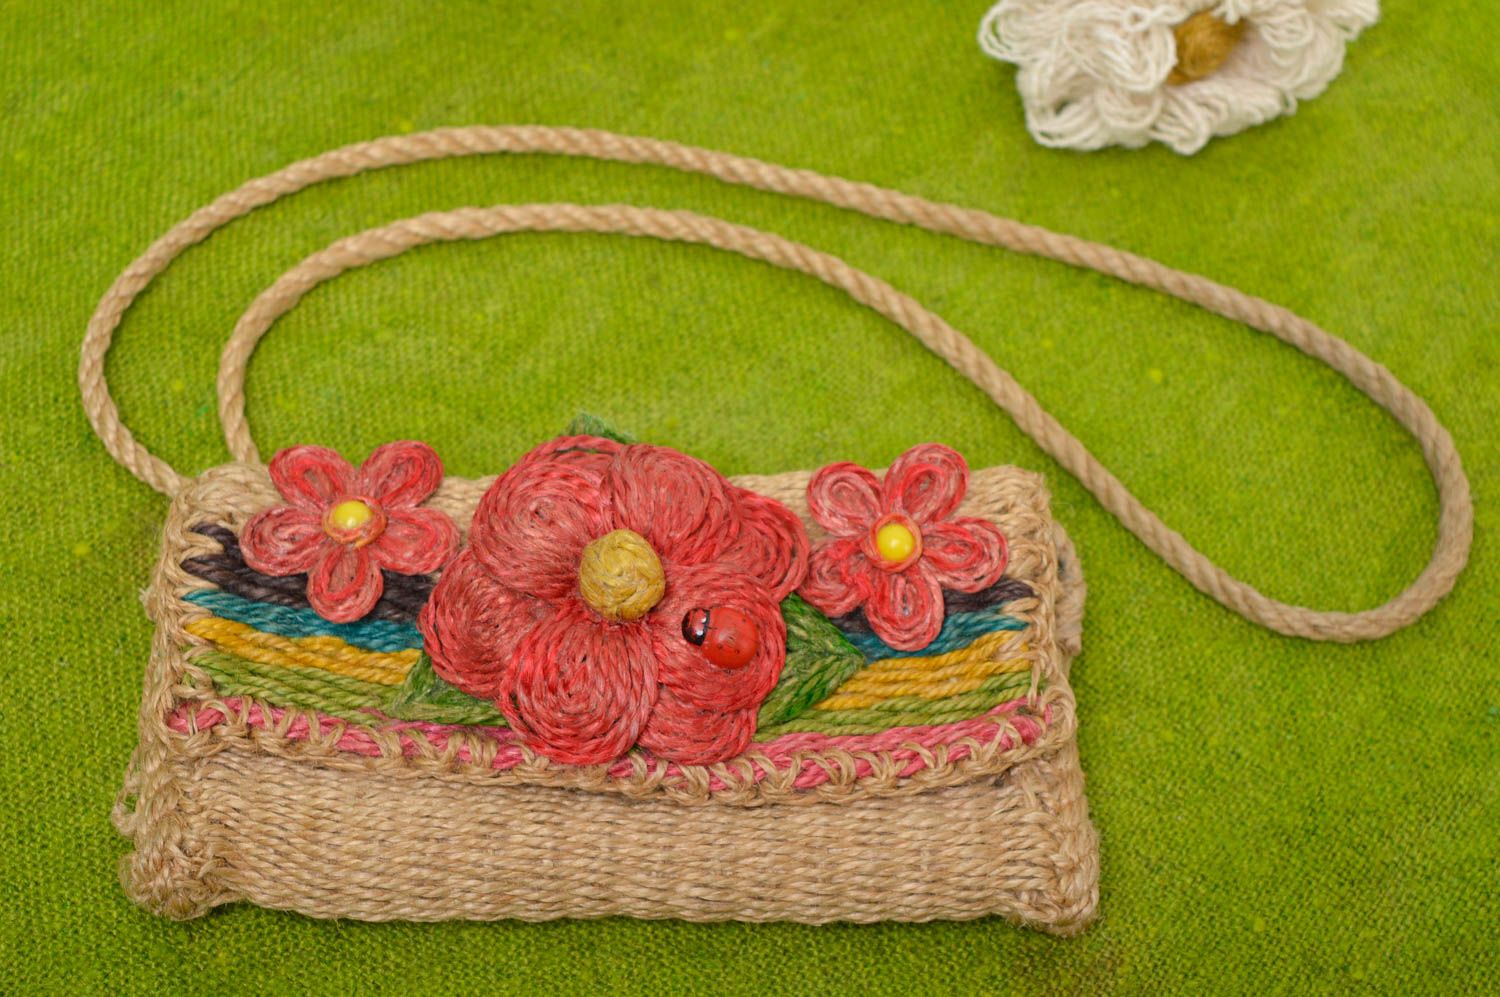 Сумка ручной работы сумочка плетеная из шпагата женская сумка с цветами фото 1